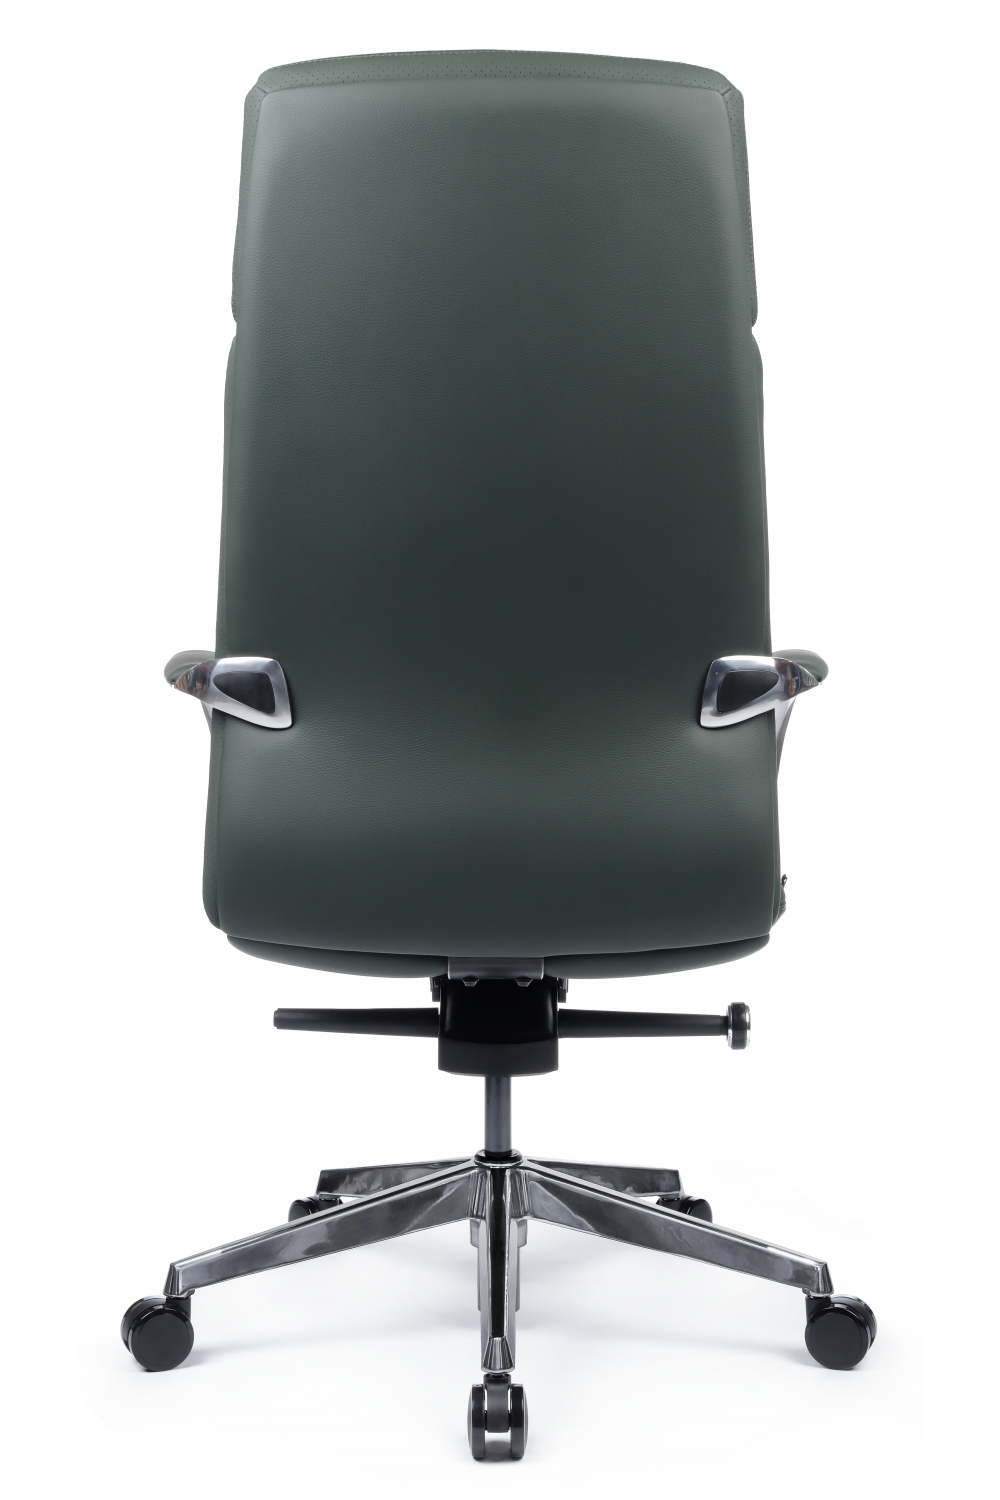 Кресло руководителя RIVA DESIGN Pablo A2216-1 натуральная кожа Зеленый